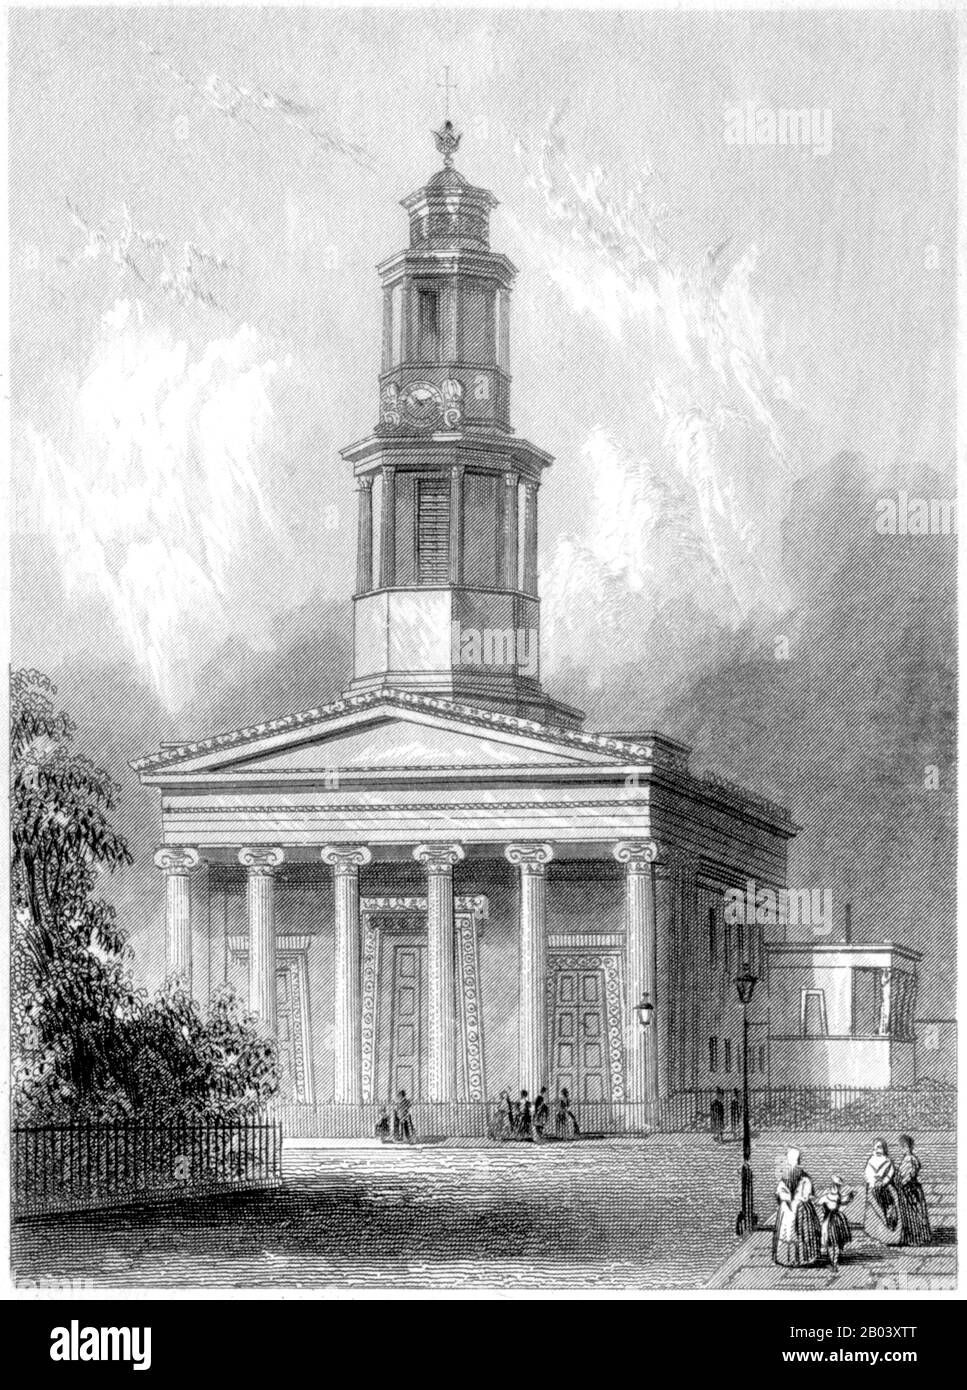 Gravur der St Pancras New Church, London, gescannte in hoher Auflösung aus einem Buch, das im Jahr 1851 gedruckt wurde. Es wird angenommen, dass dieses Bild frei von allen Urheberrechten ist. Stockfoto